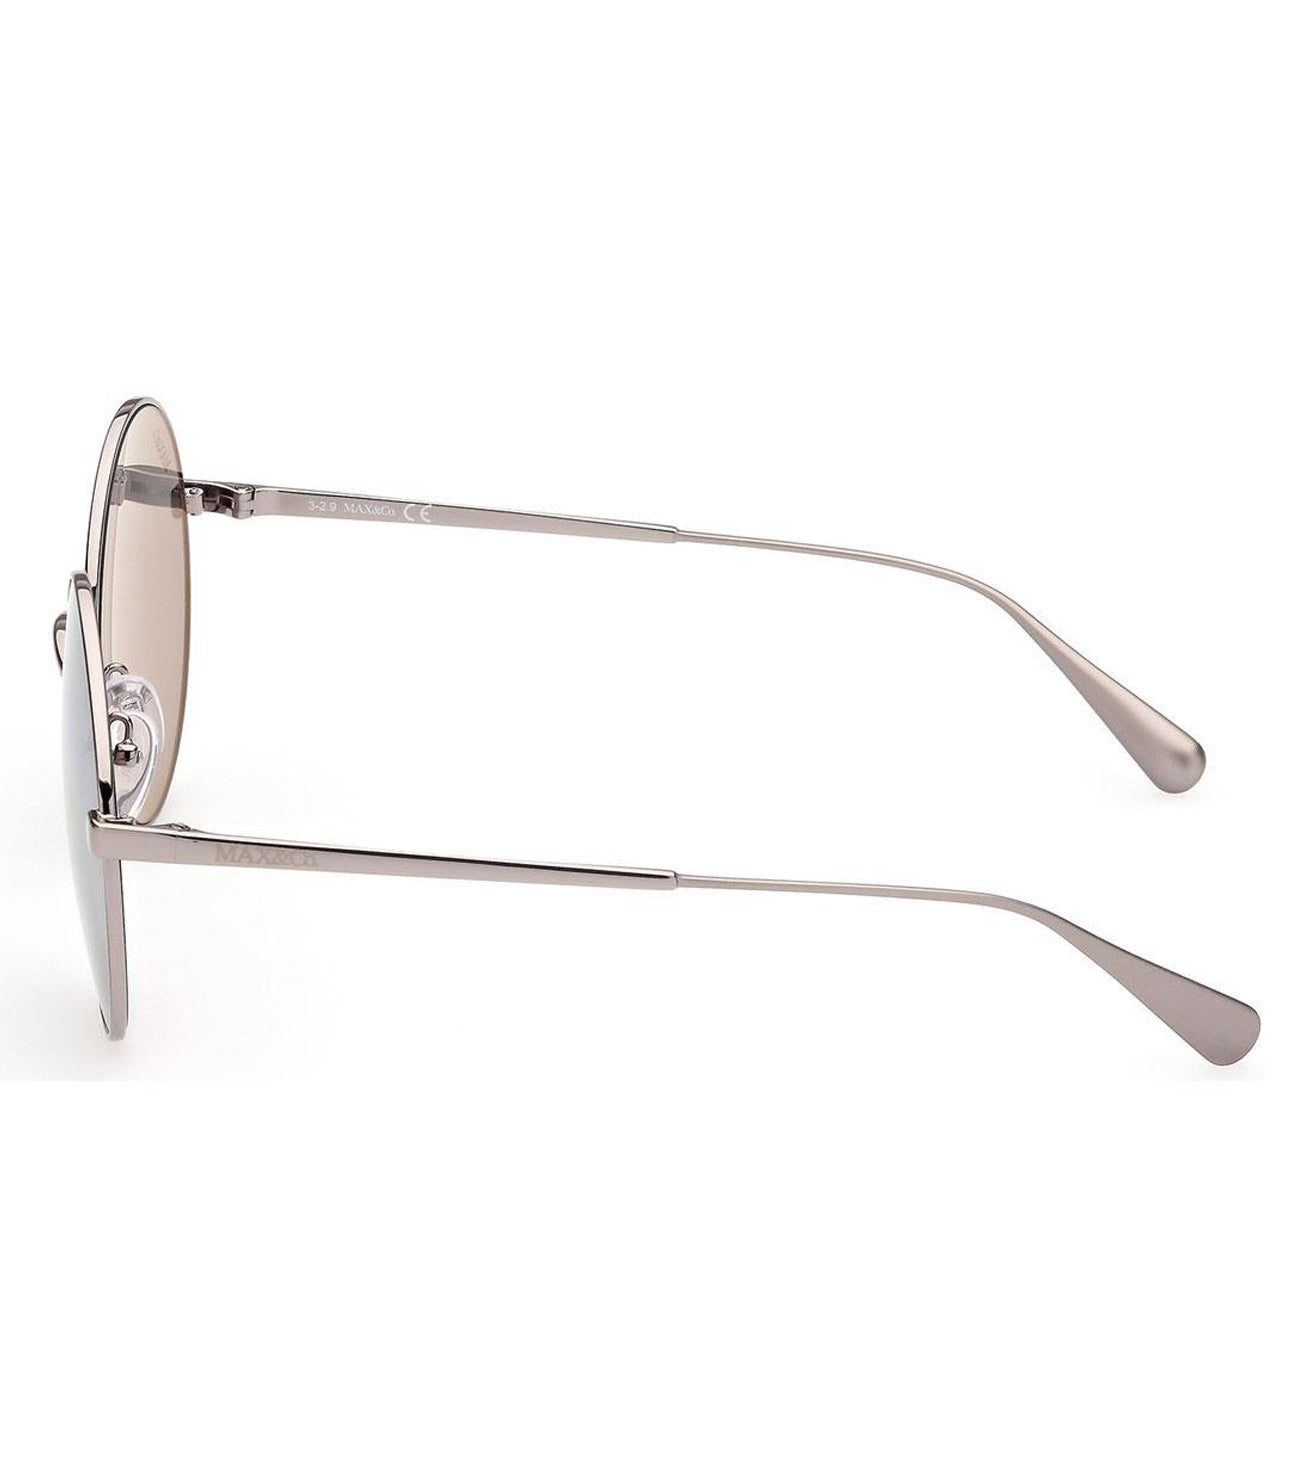 Round Shiny Matte Silver Grey Max Mara Sunglasses